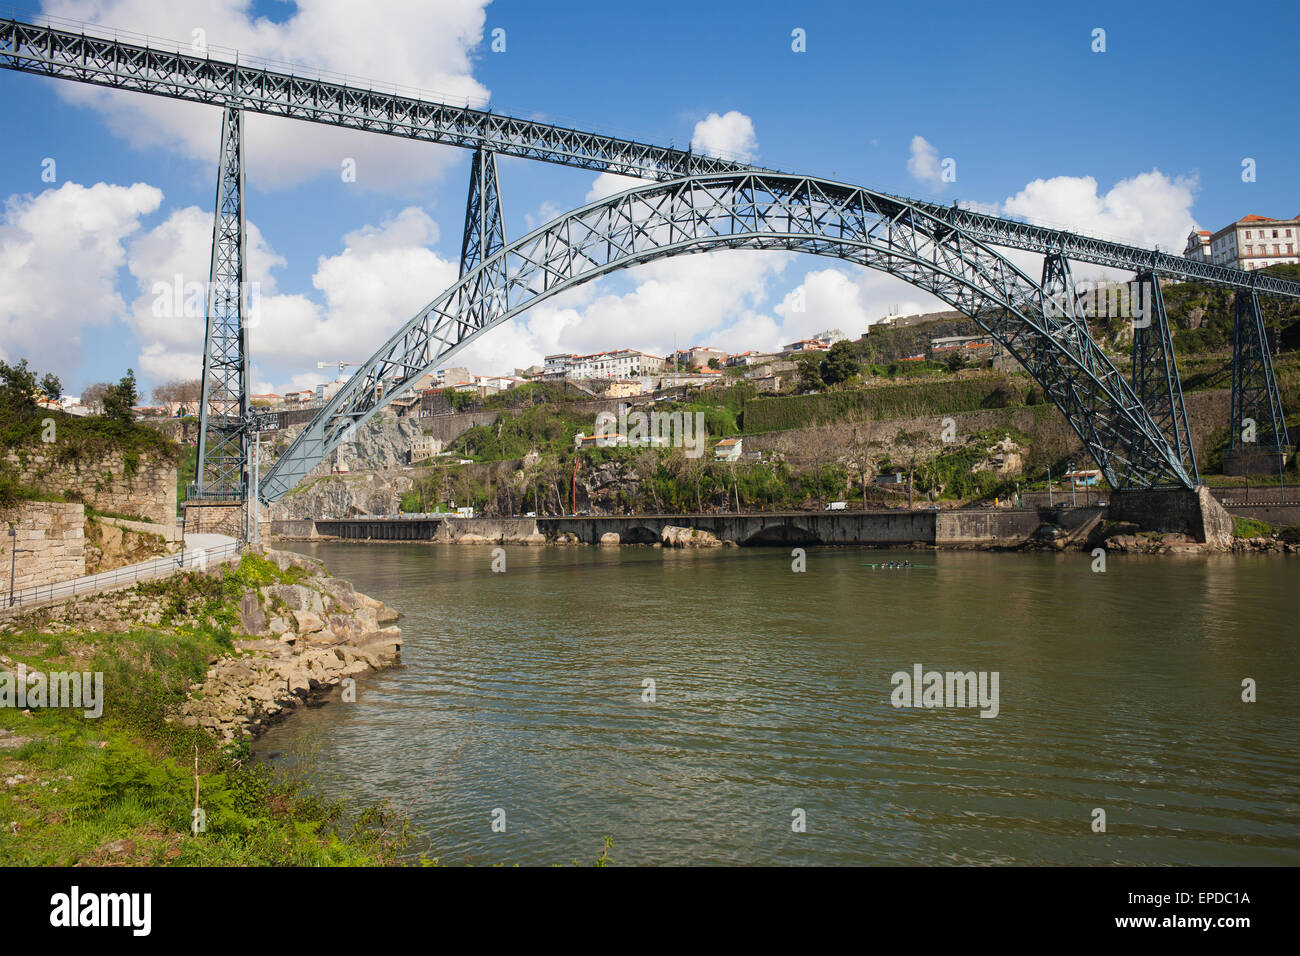 Maria-Pia-Brücke in Porto, Portugal, schmiedeeisernen Bogen Eisenbahnbrücke über den Fluss Douro, eröffnet im Jahre 1877, Gustave Eiffel Design. Stockfoto